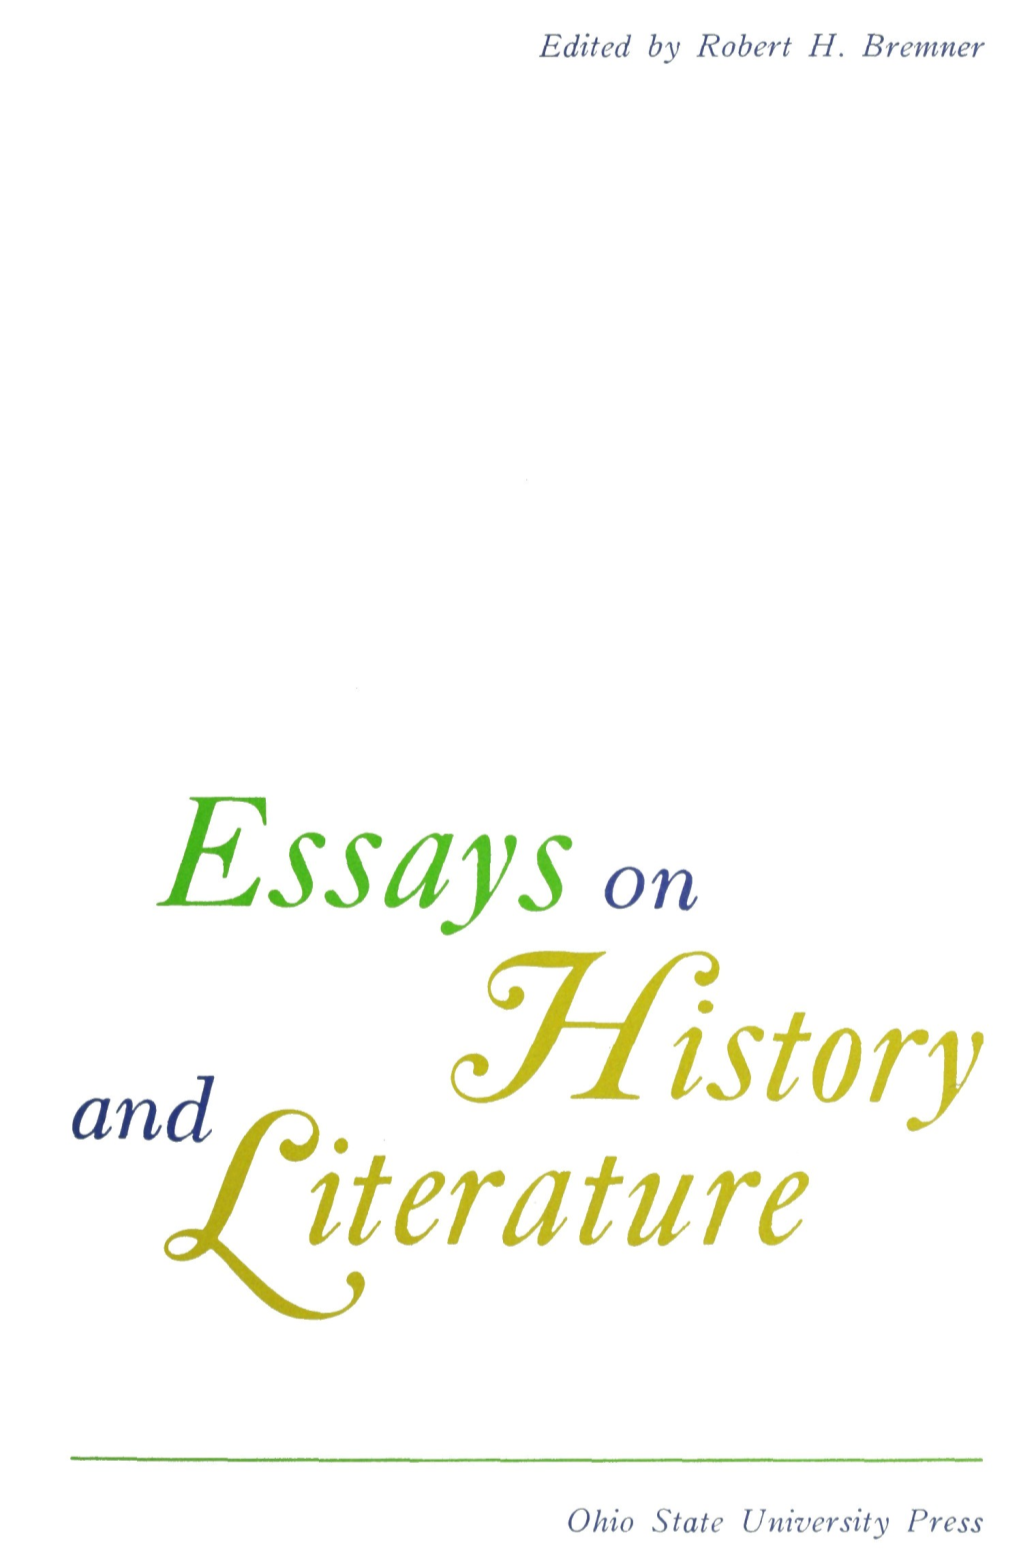 Essayson Ana,,, Hist Jiterature